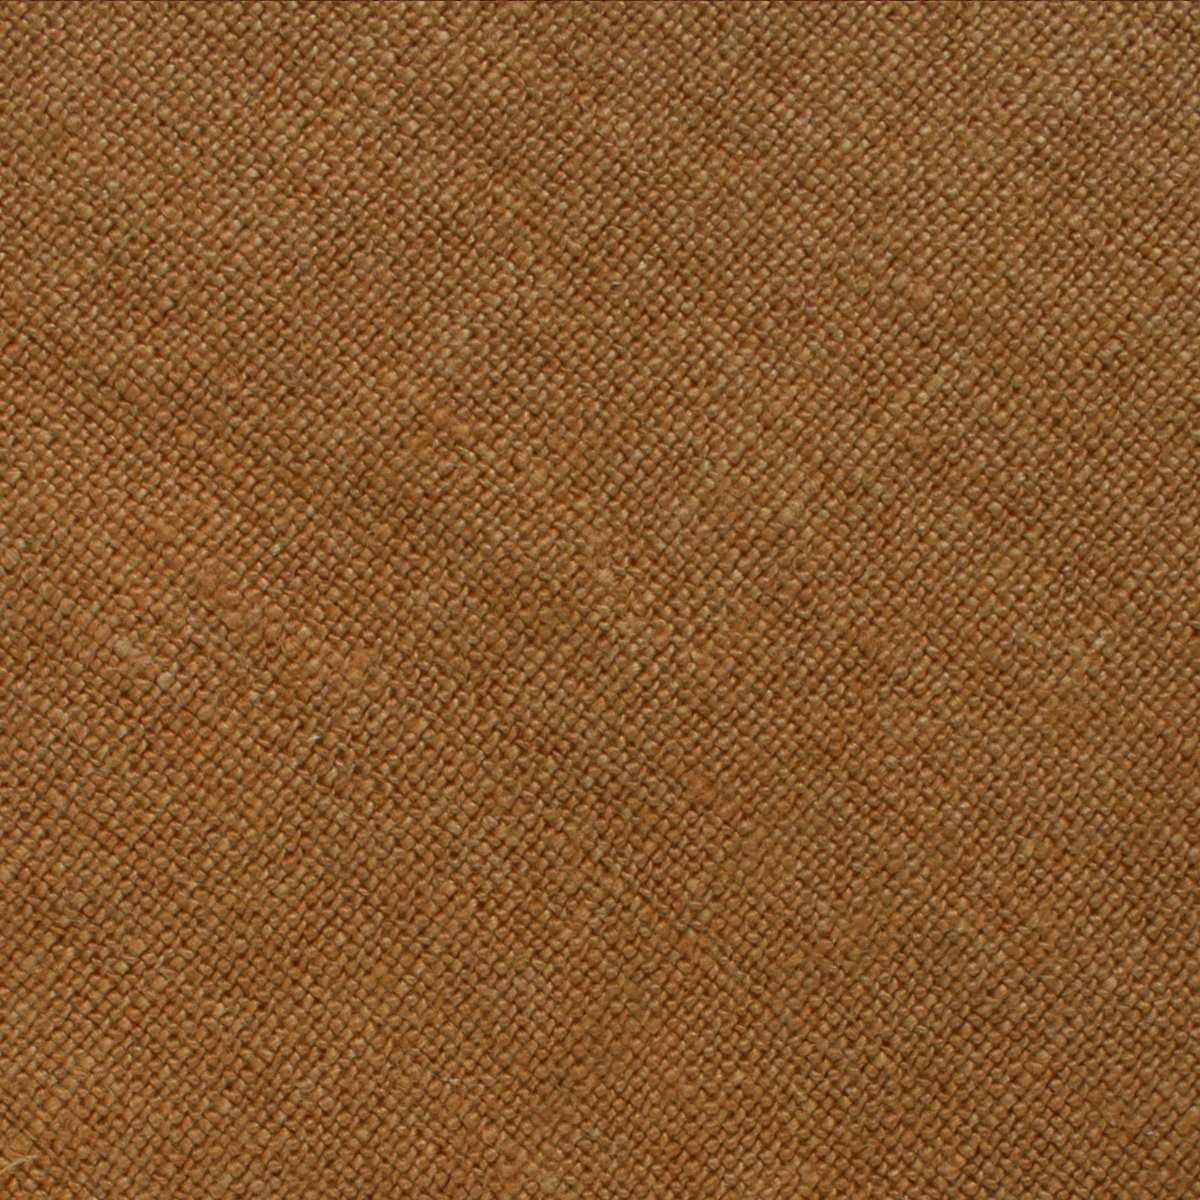 Dark Mustard Brown Linen Necktie Fabric